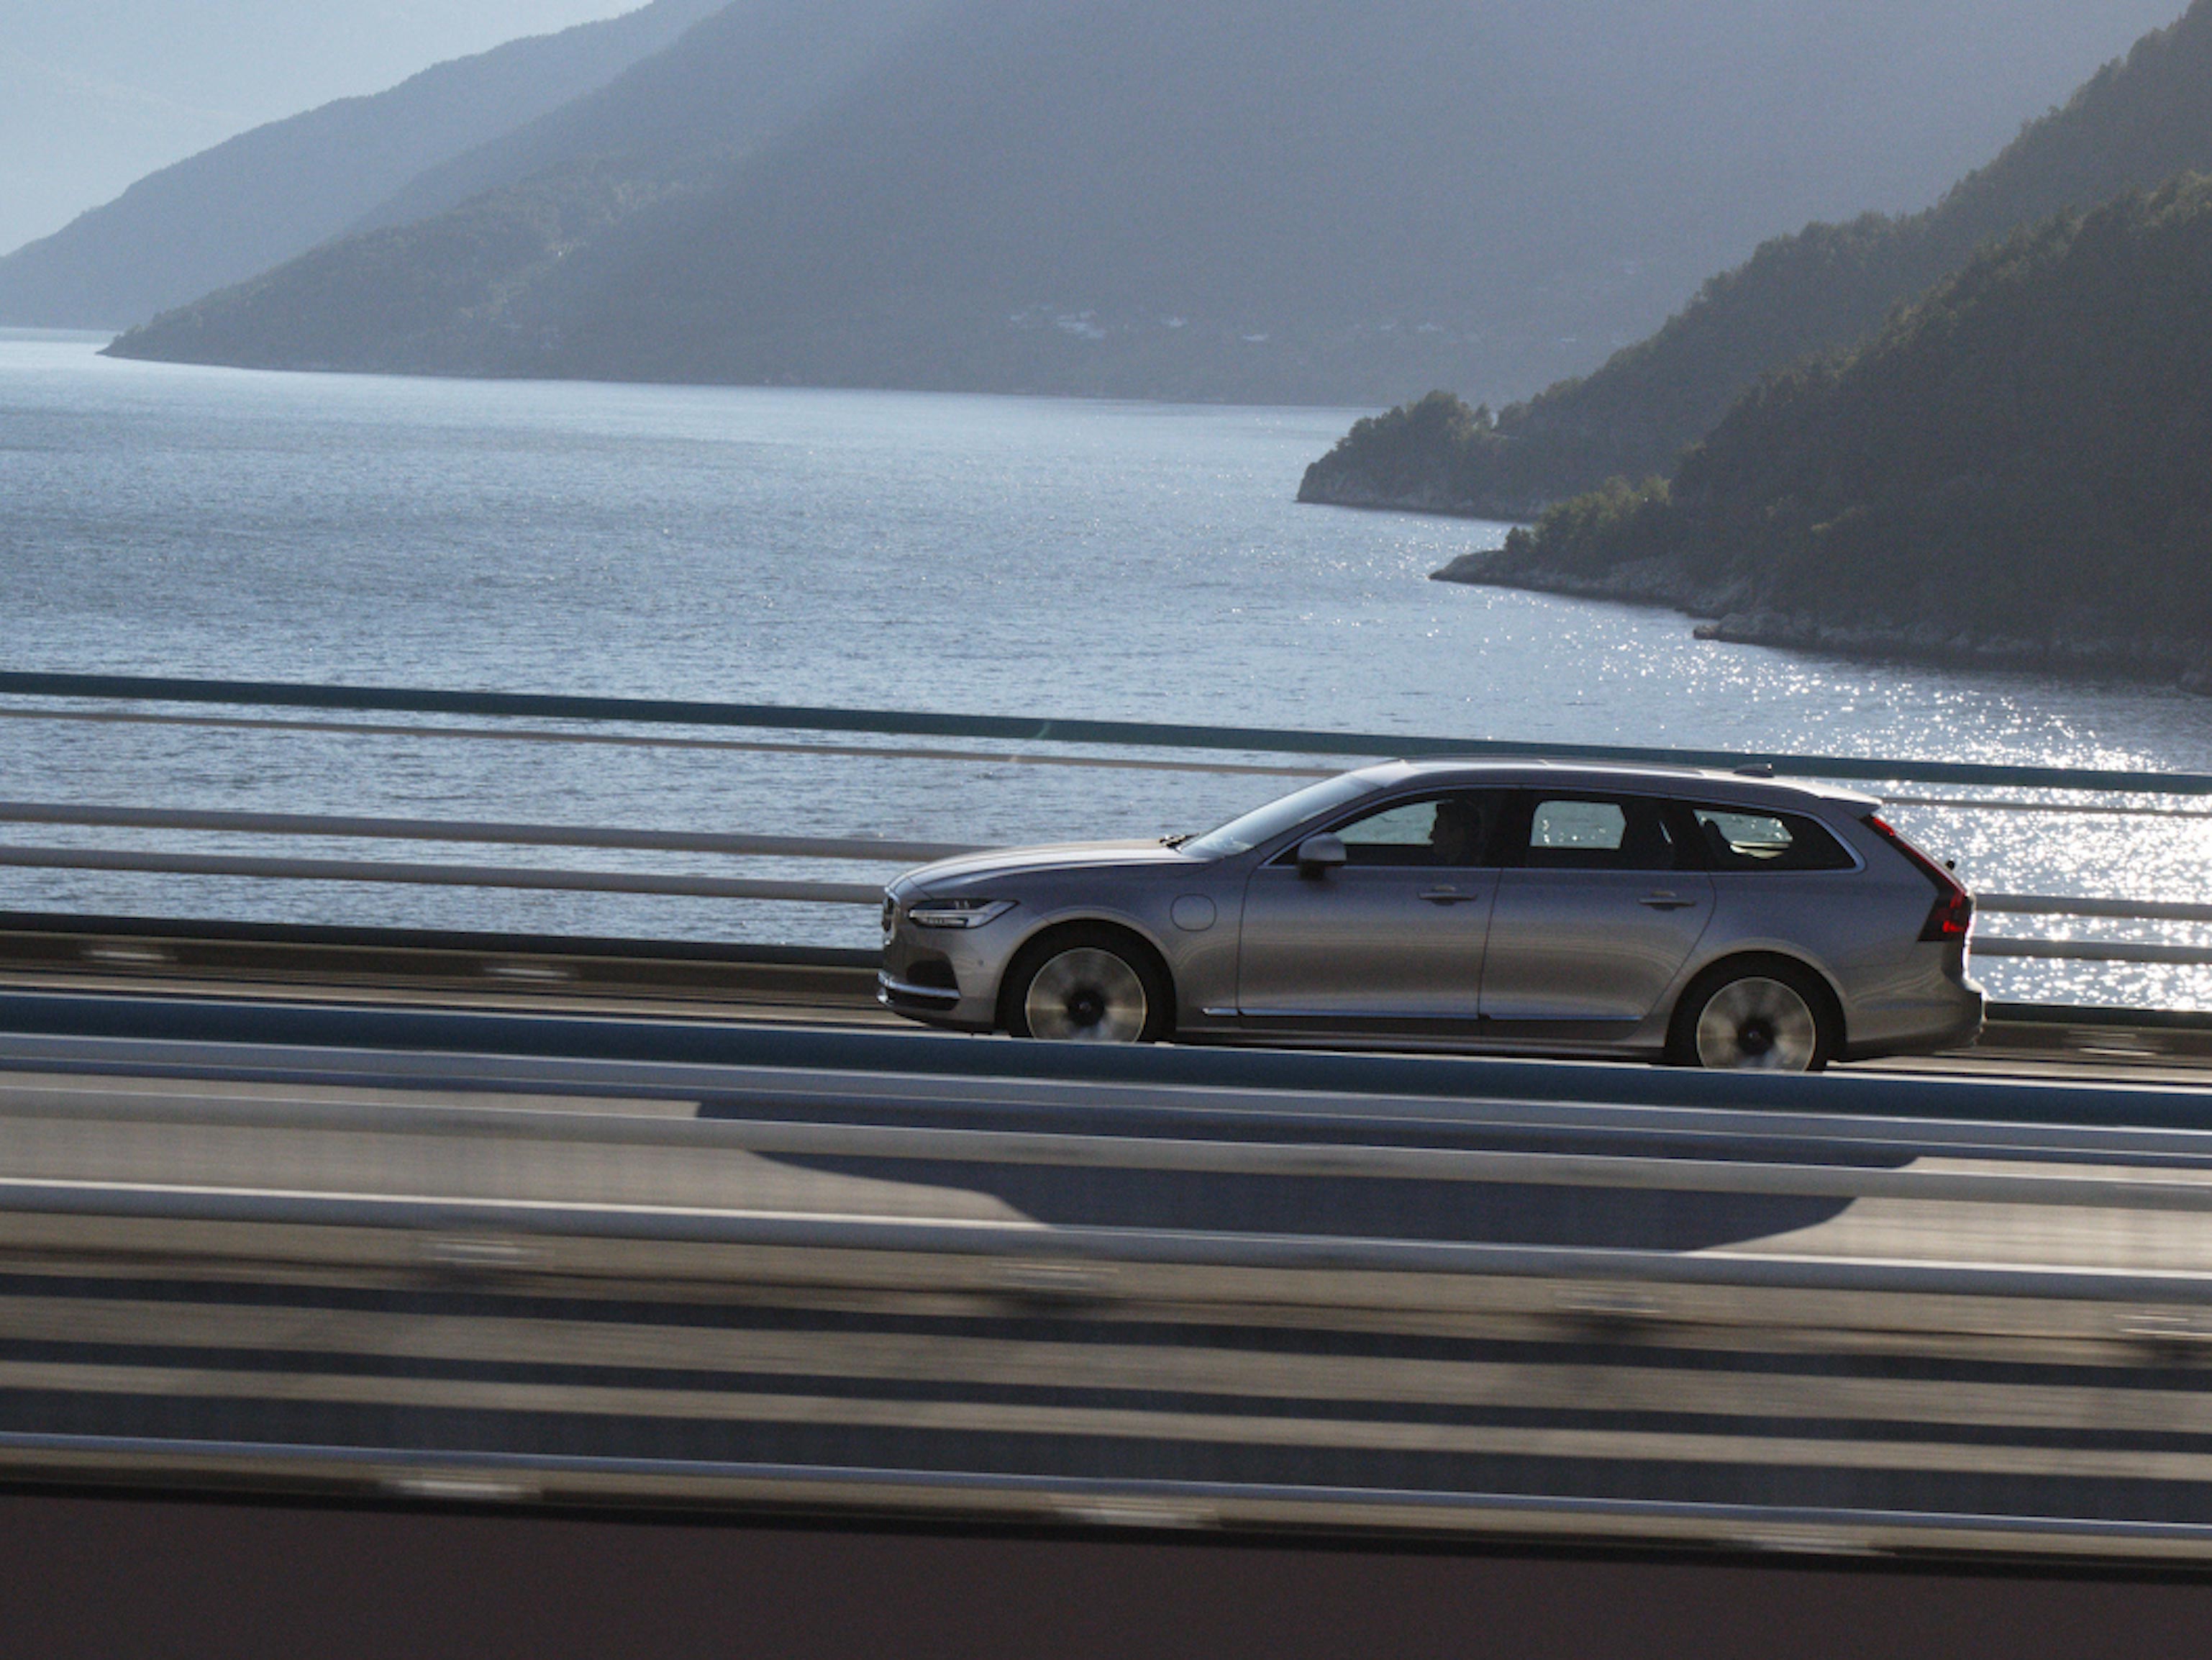 ภาพมุมกว้างของ Volvo V90 รถ Estate สี Bright Dusk กำลังขับไปตามถนนบนภูเขาที่มองเห็นฟยอร์ดที่ส่องประกายระยิบระยับ